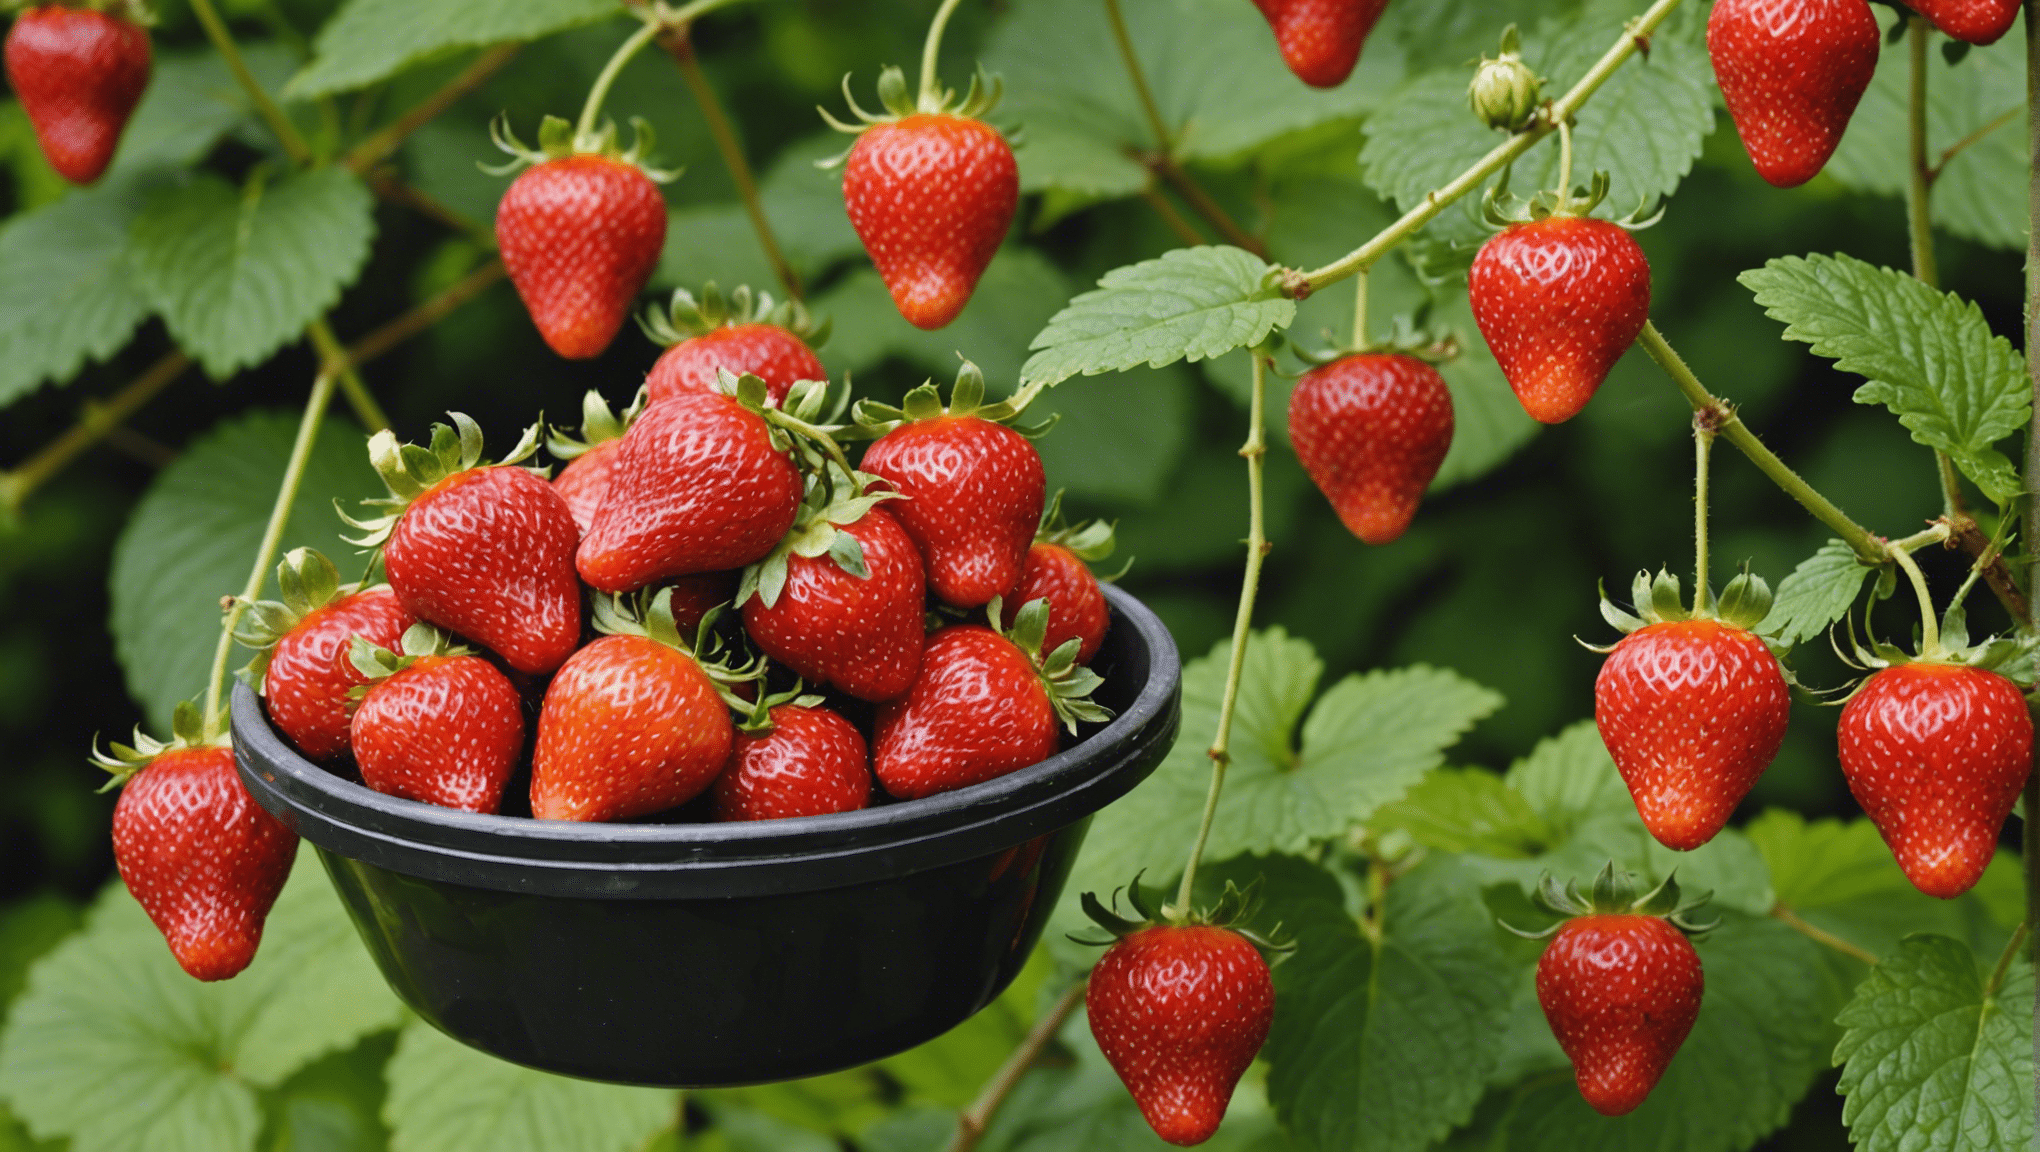 découvrez pourquoi les fraisiers sont le secret ultime d'un jardin luxuriant et productif. astuces, conseils et bienfaits des fraisiers pour votre jardin.